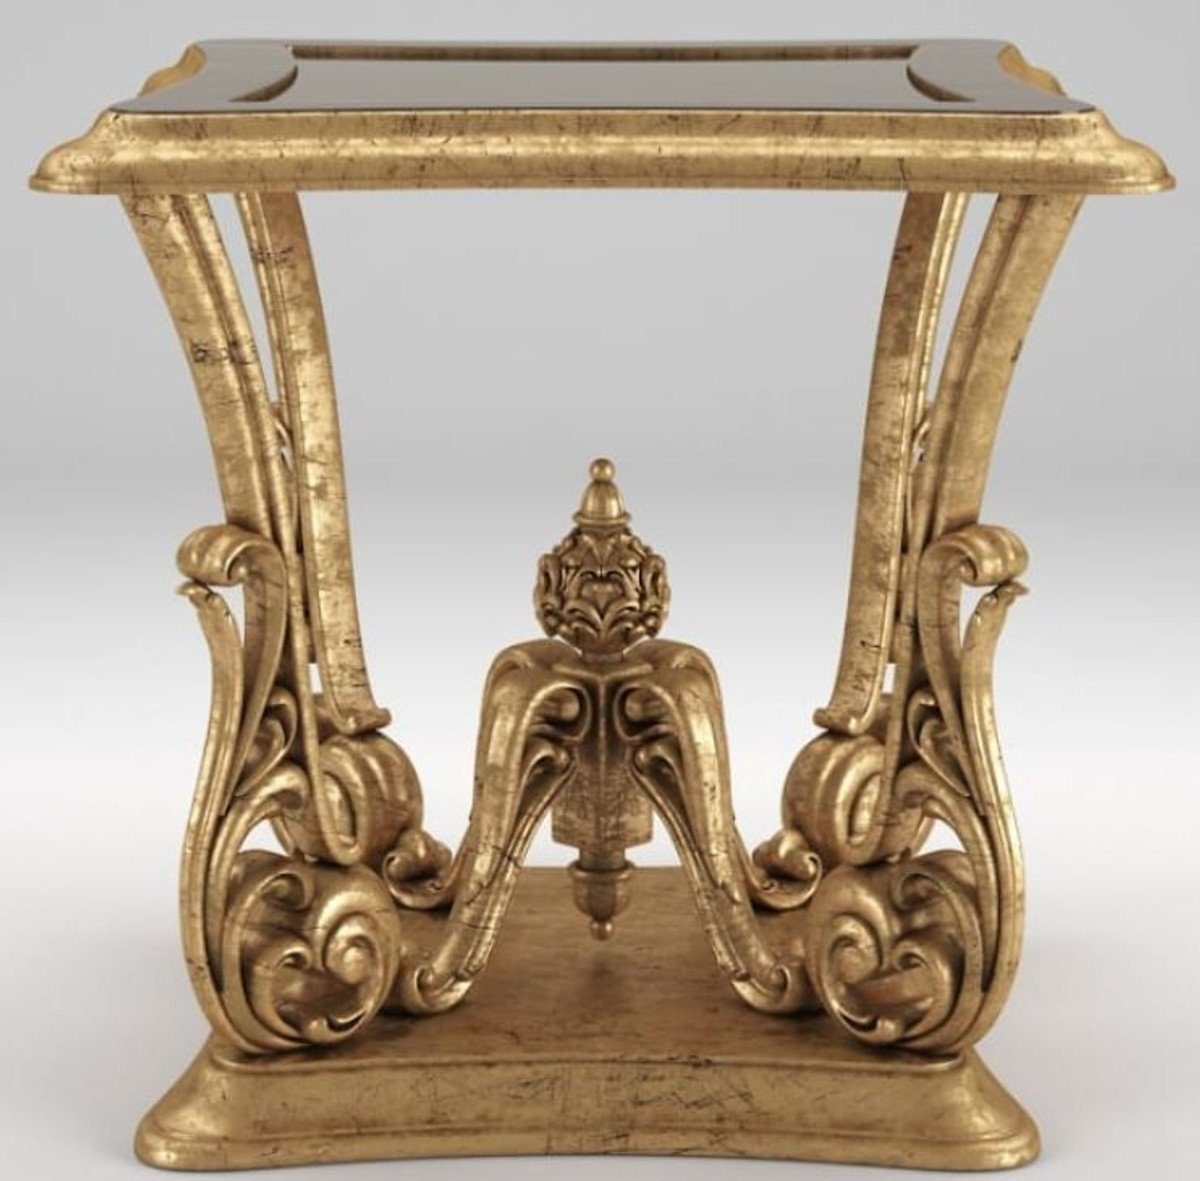 Casa Padrino Beistelltisch Luxus Barock Beistelltisch Antik Gold 70 x 70 x H. 70 cm - Prunkvoller Tisch im Barockstil - Barock Möbel